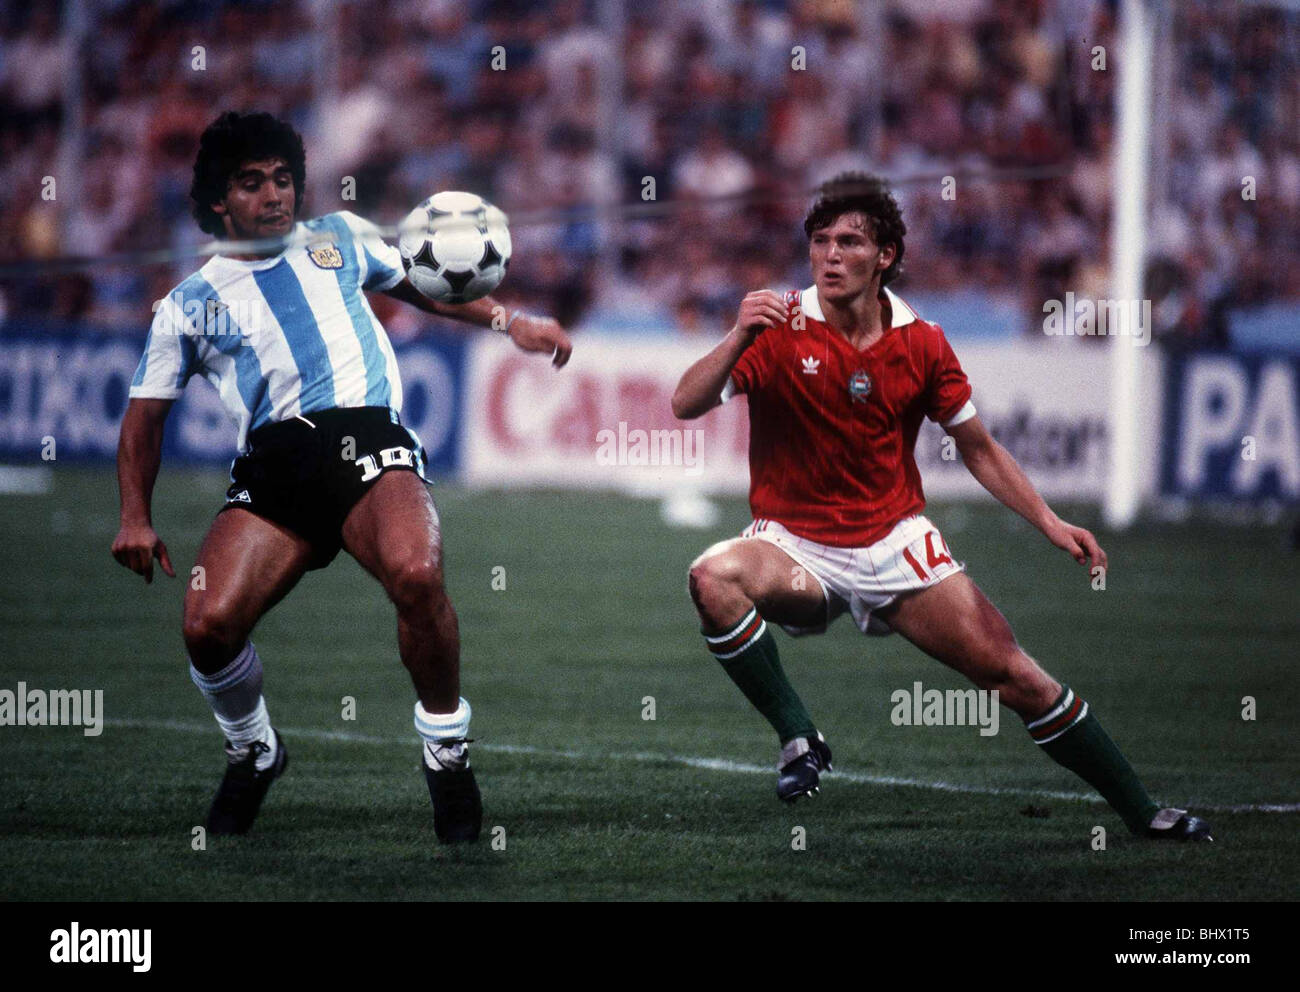 Argentina v Hungary World Cup 1982 football Maradona and Sallai Stock Photo